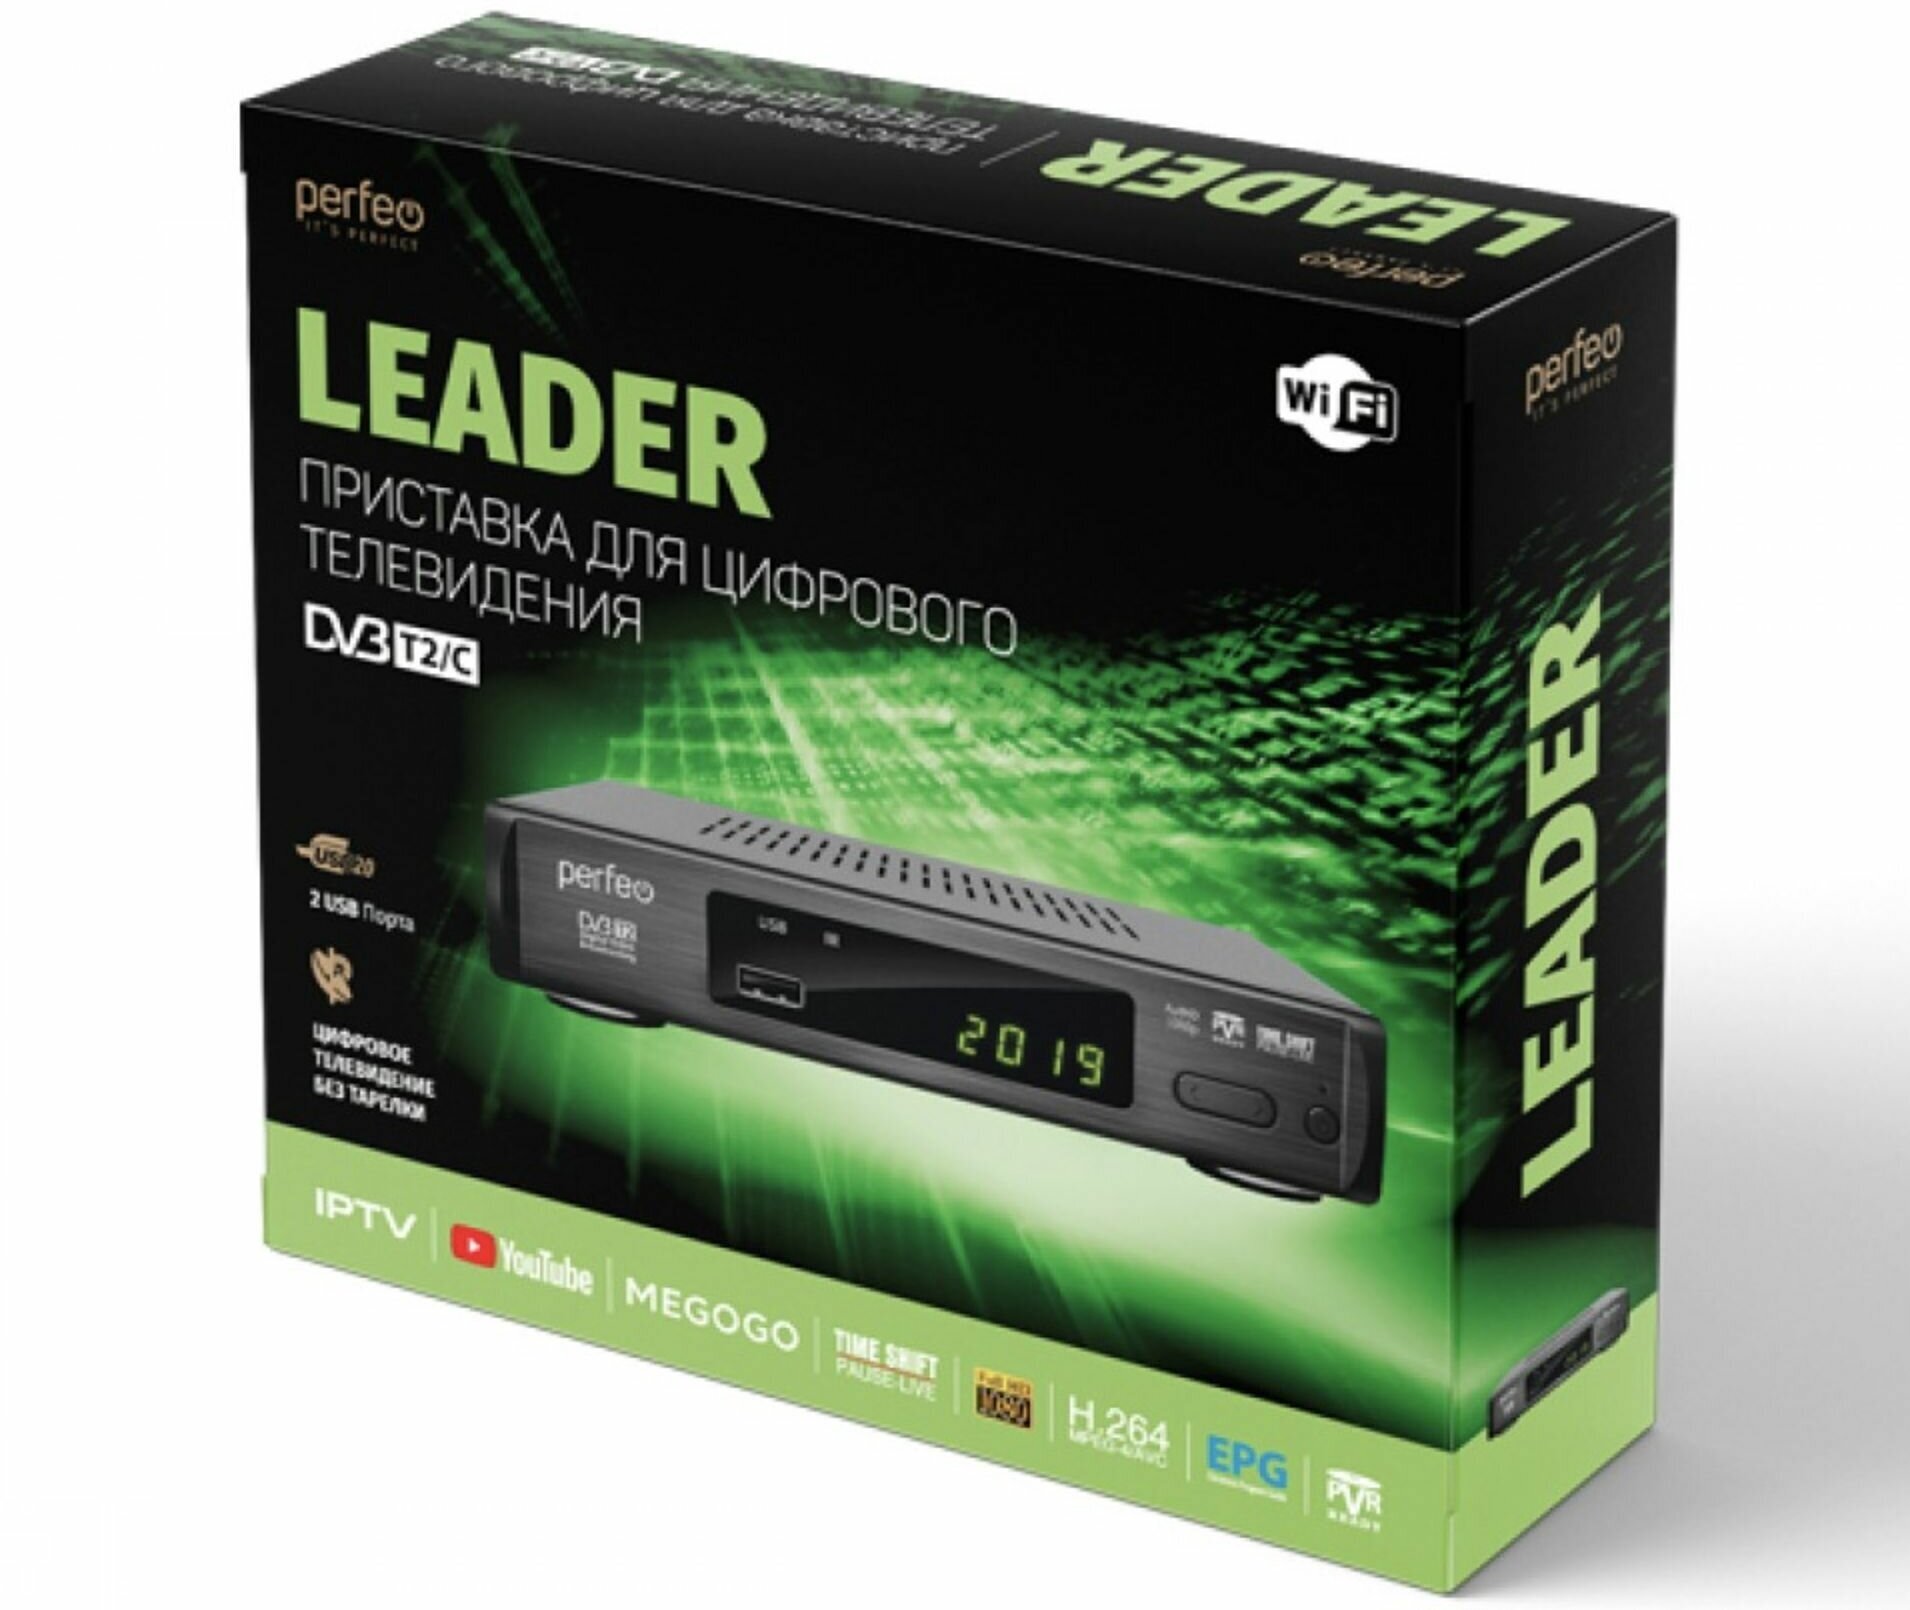 Приставка DVB-T2/C Perfeo "LEADER" для цифр. TV, Wi-Fi, IPTV, HDMI, 2 USB, DolbyDigital, пульт ДУ